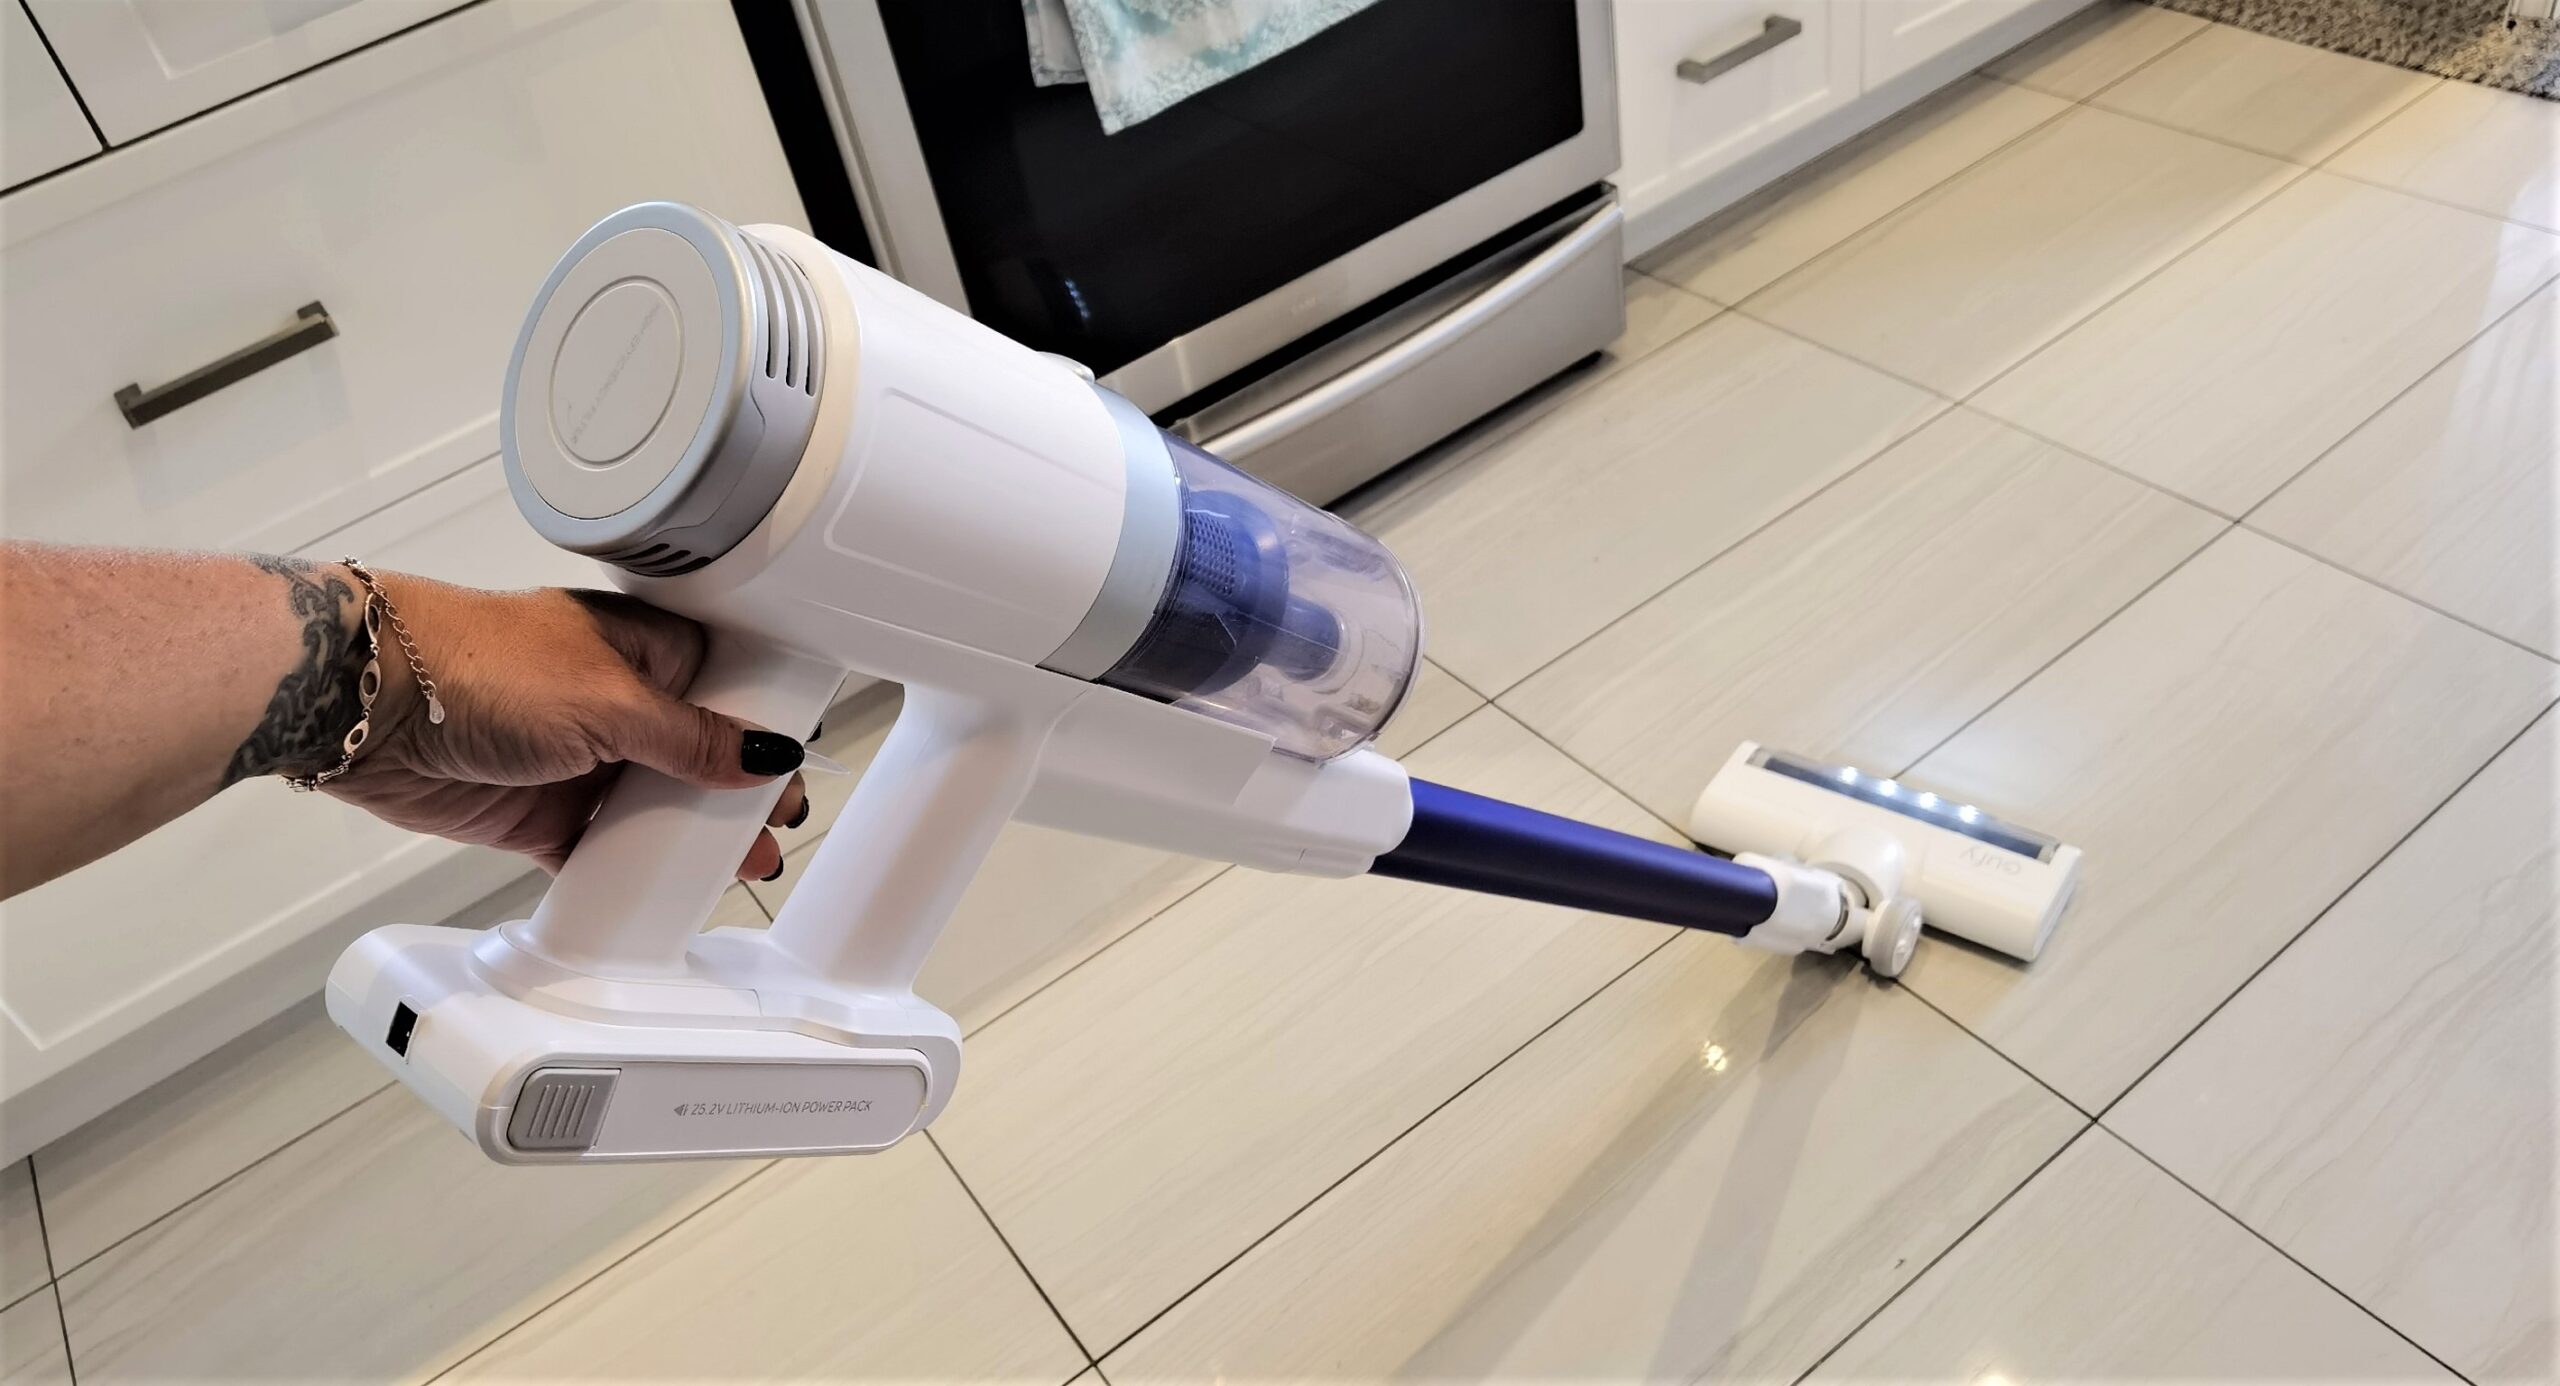 Aspirateur-balai sans fil HomeVac S11 Reach d'eufy par Anker sur le plancher de cuisine